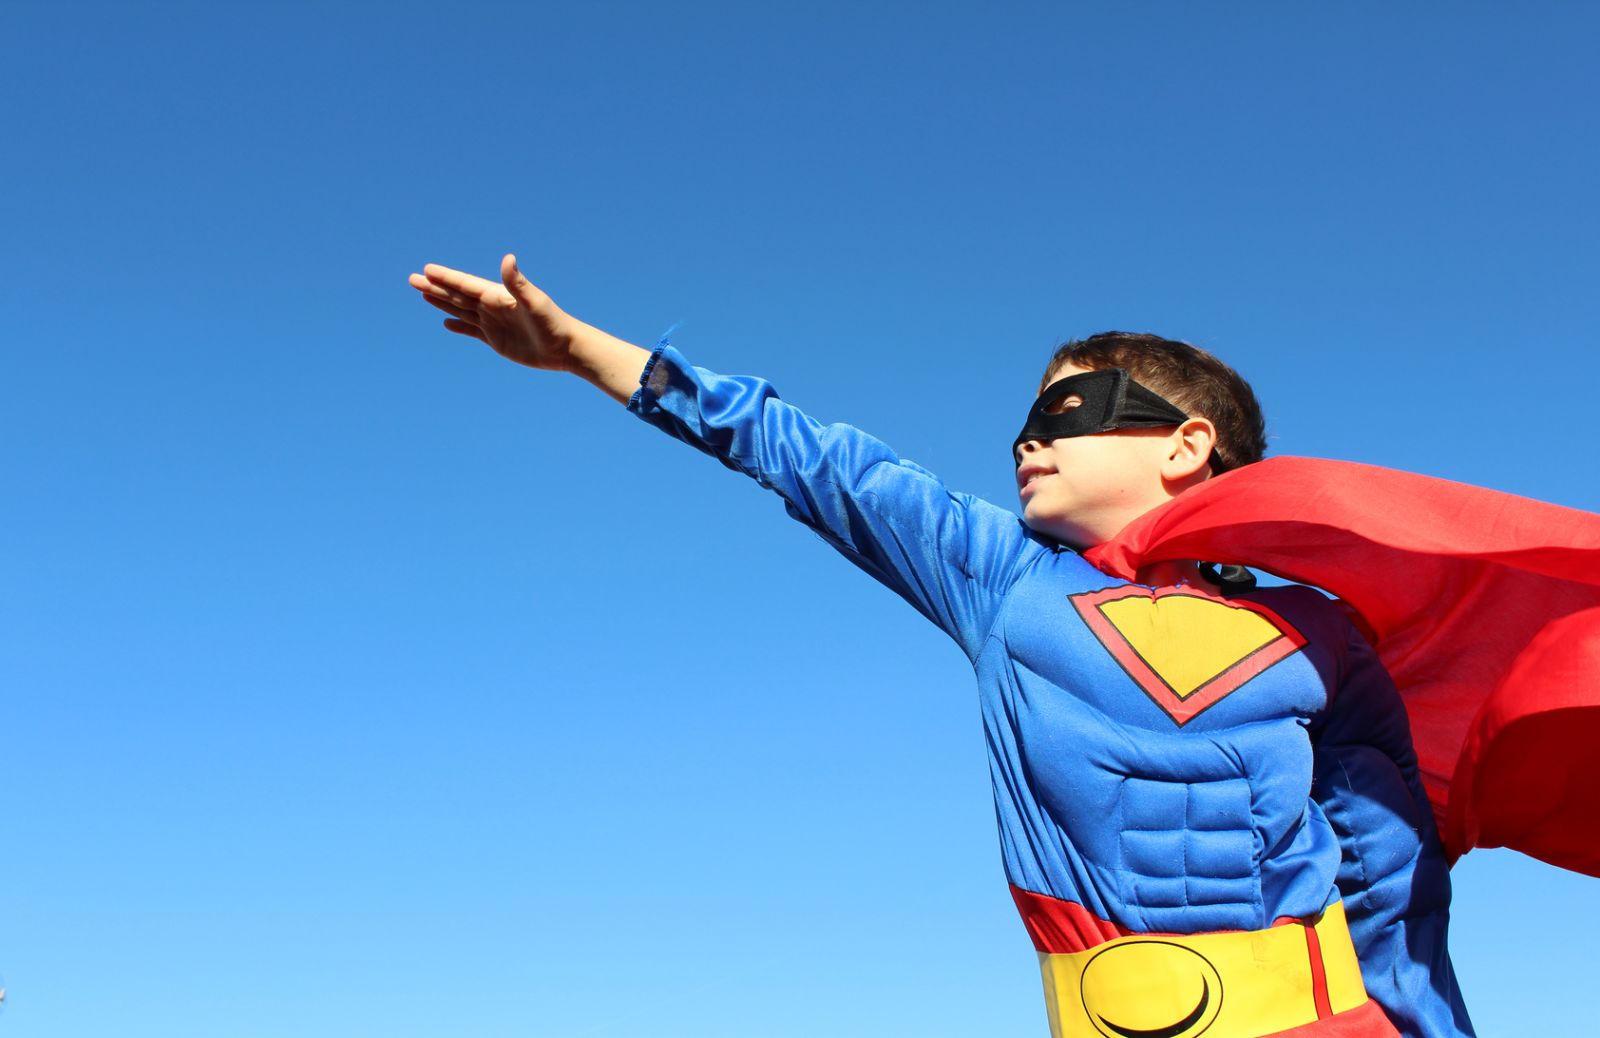 Bambini e supereroi: rischio di sviluppare comportamenti aggressivi